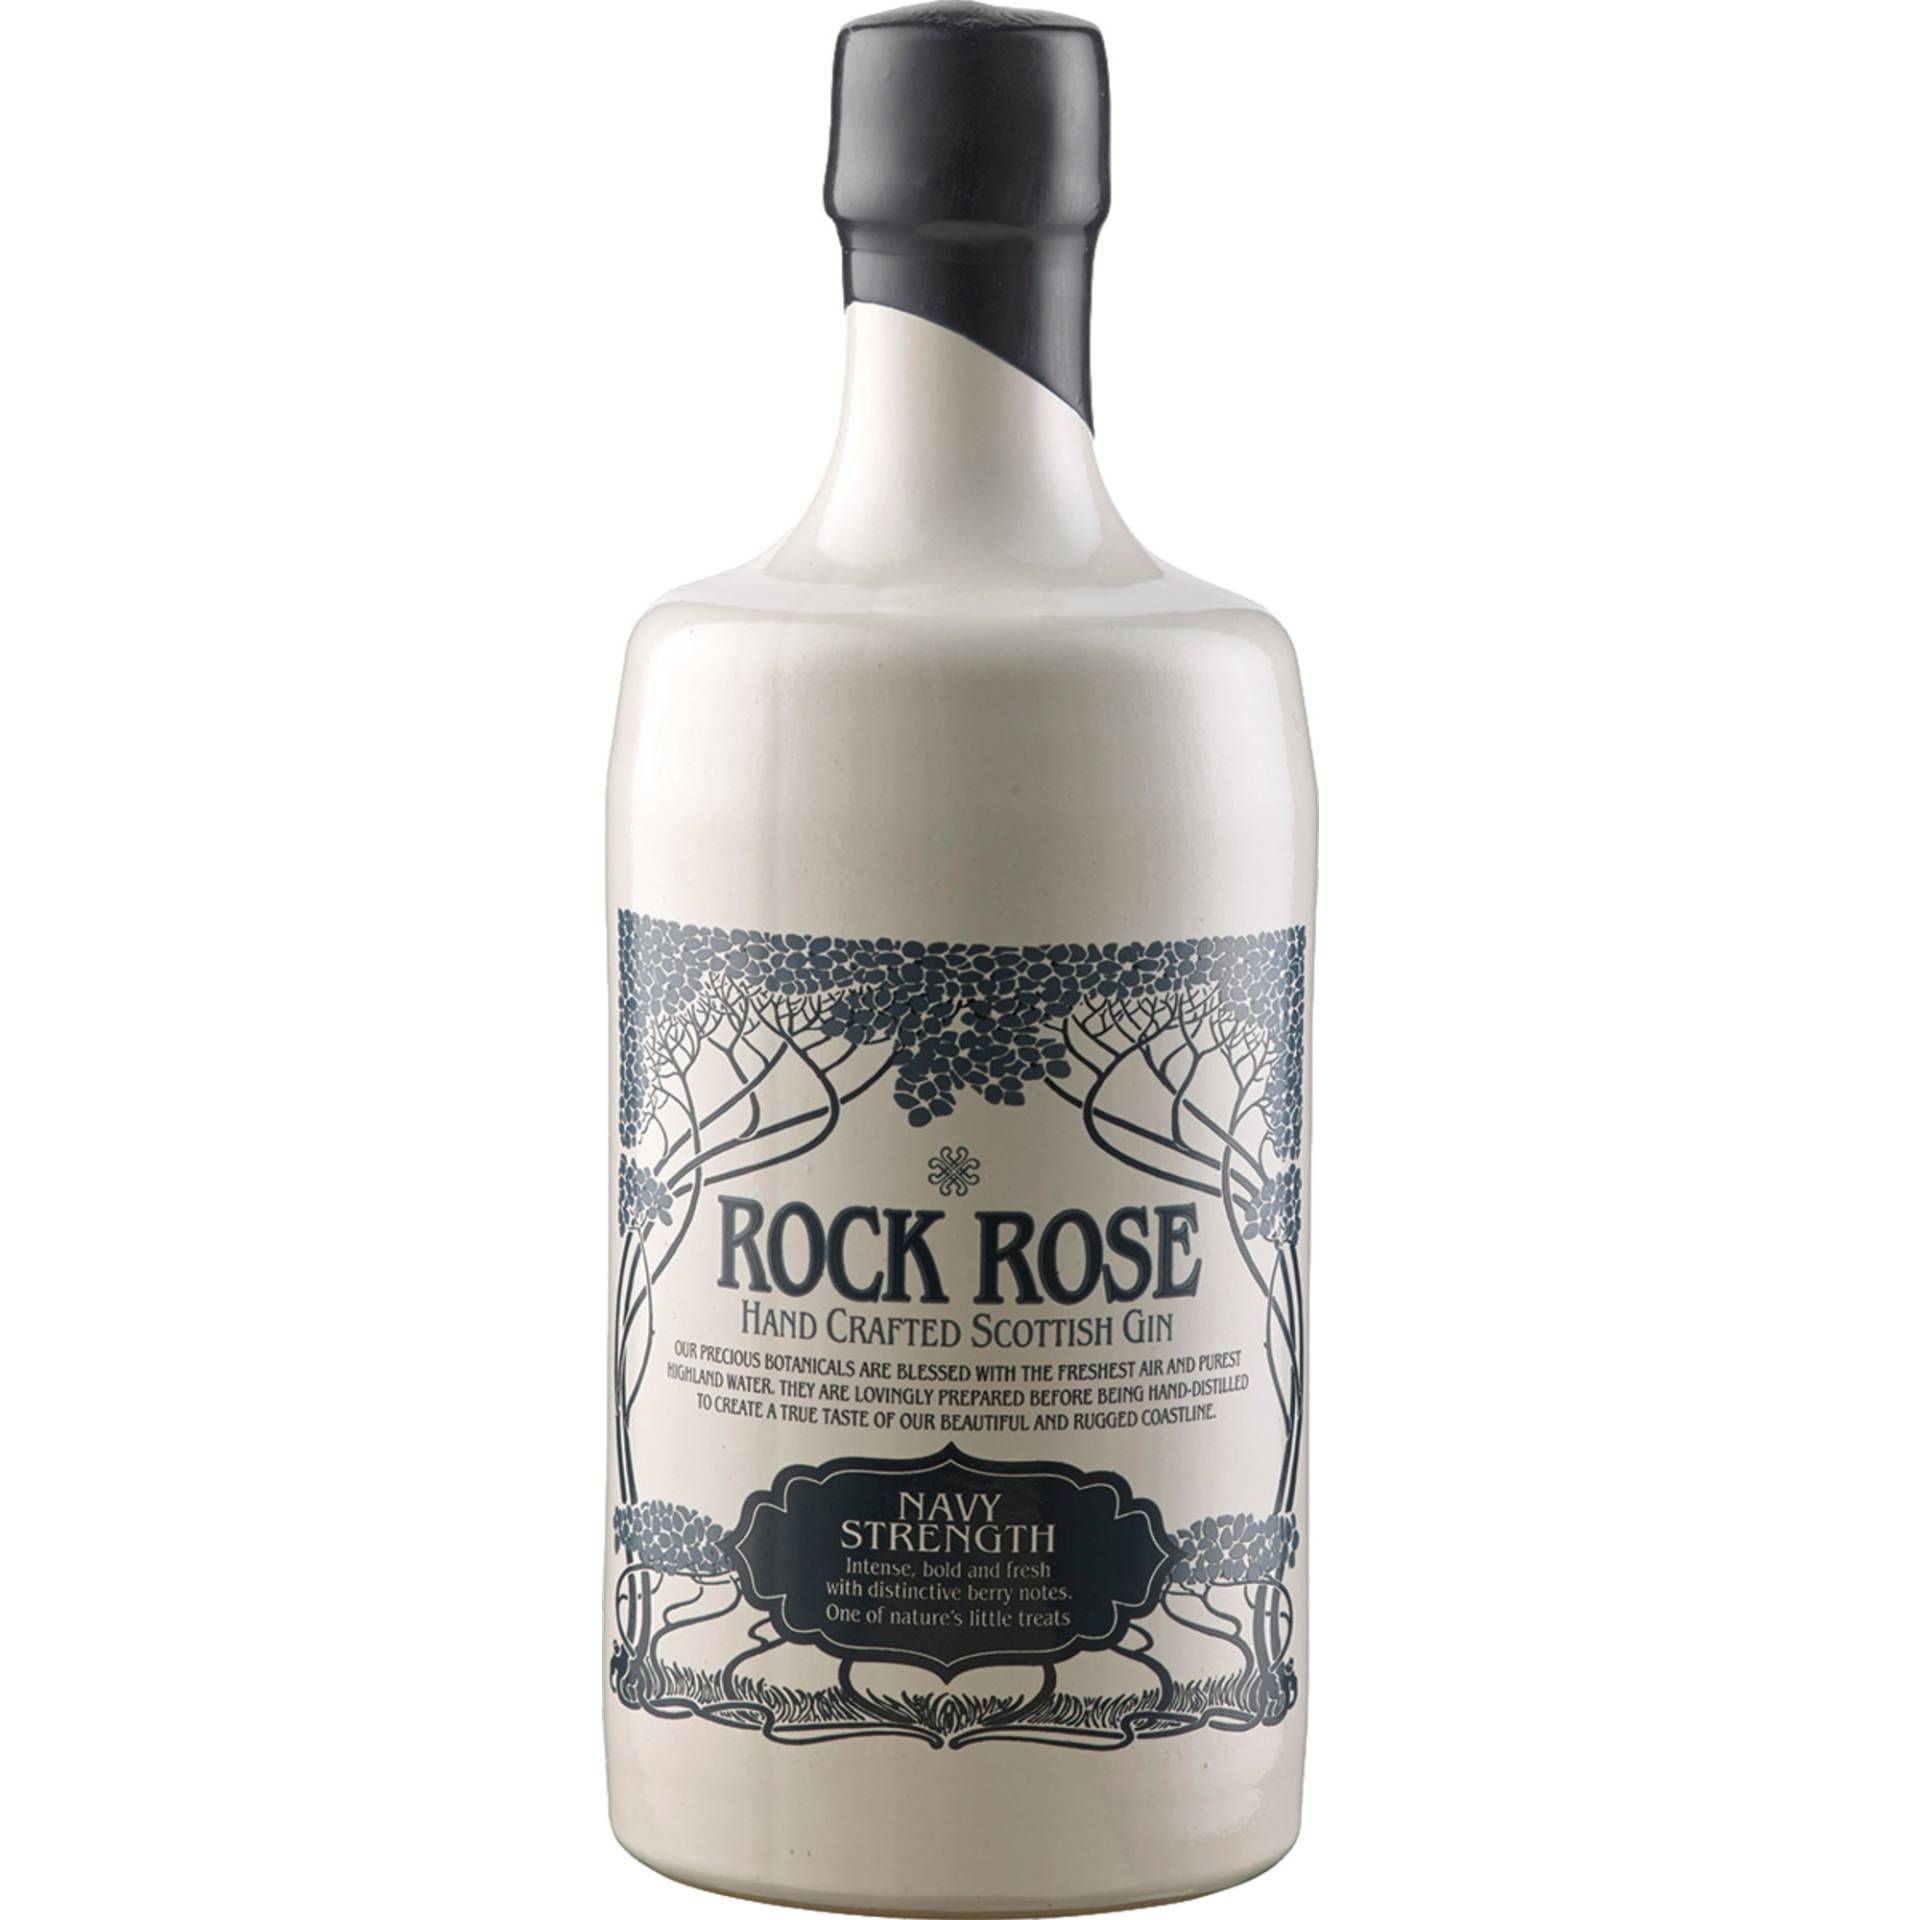 Rock Rose Handcrafted Scottish Gin, Navy Strength, 57%, 0,7 L, Schottland, Spirituosen von Dunnet Bay Distillers Ltd. ,   GB KW14 8YD Thurso